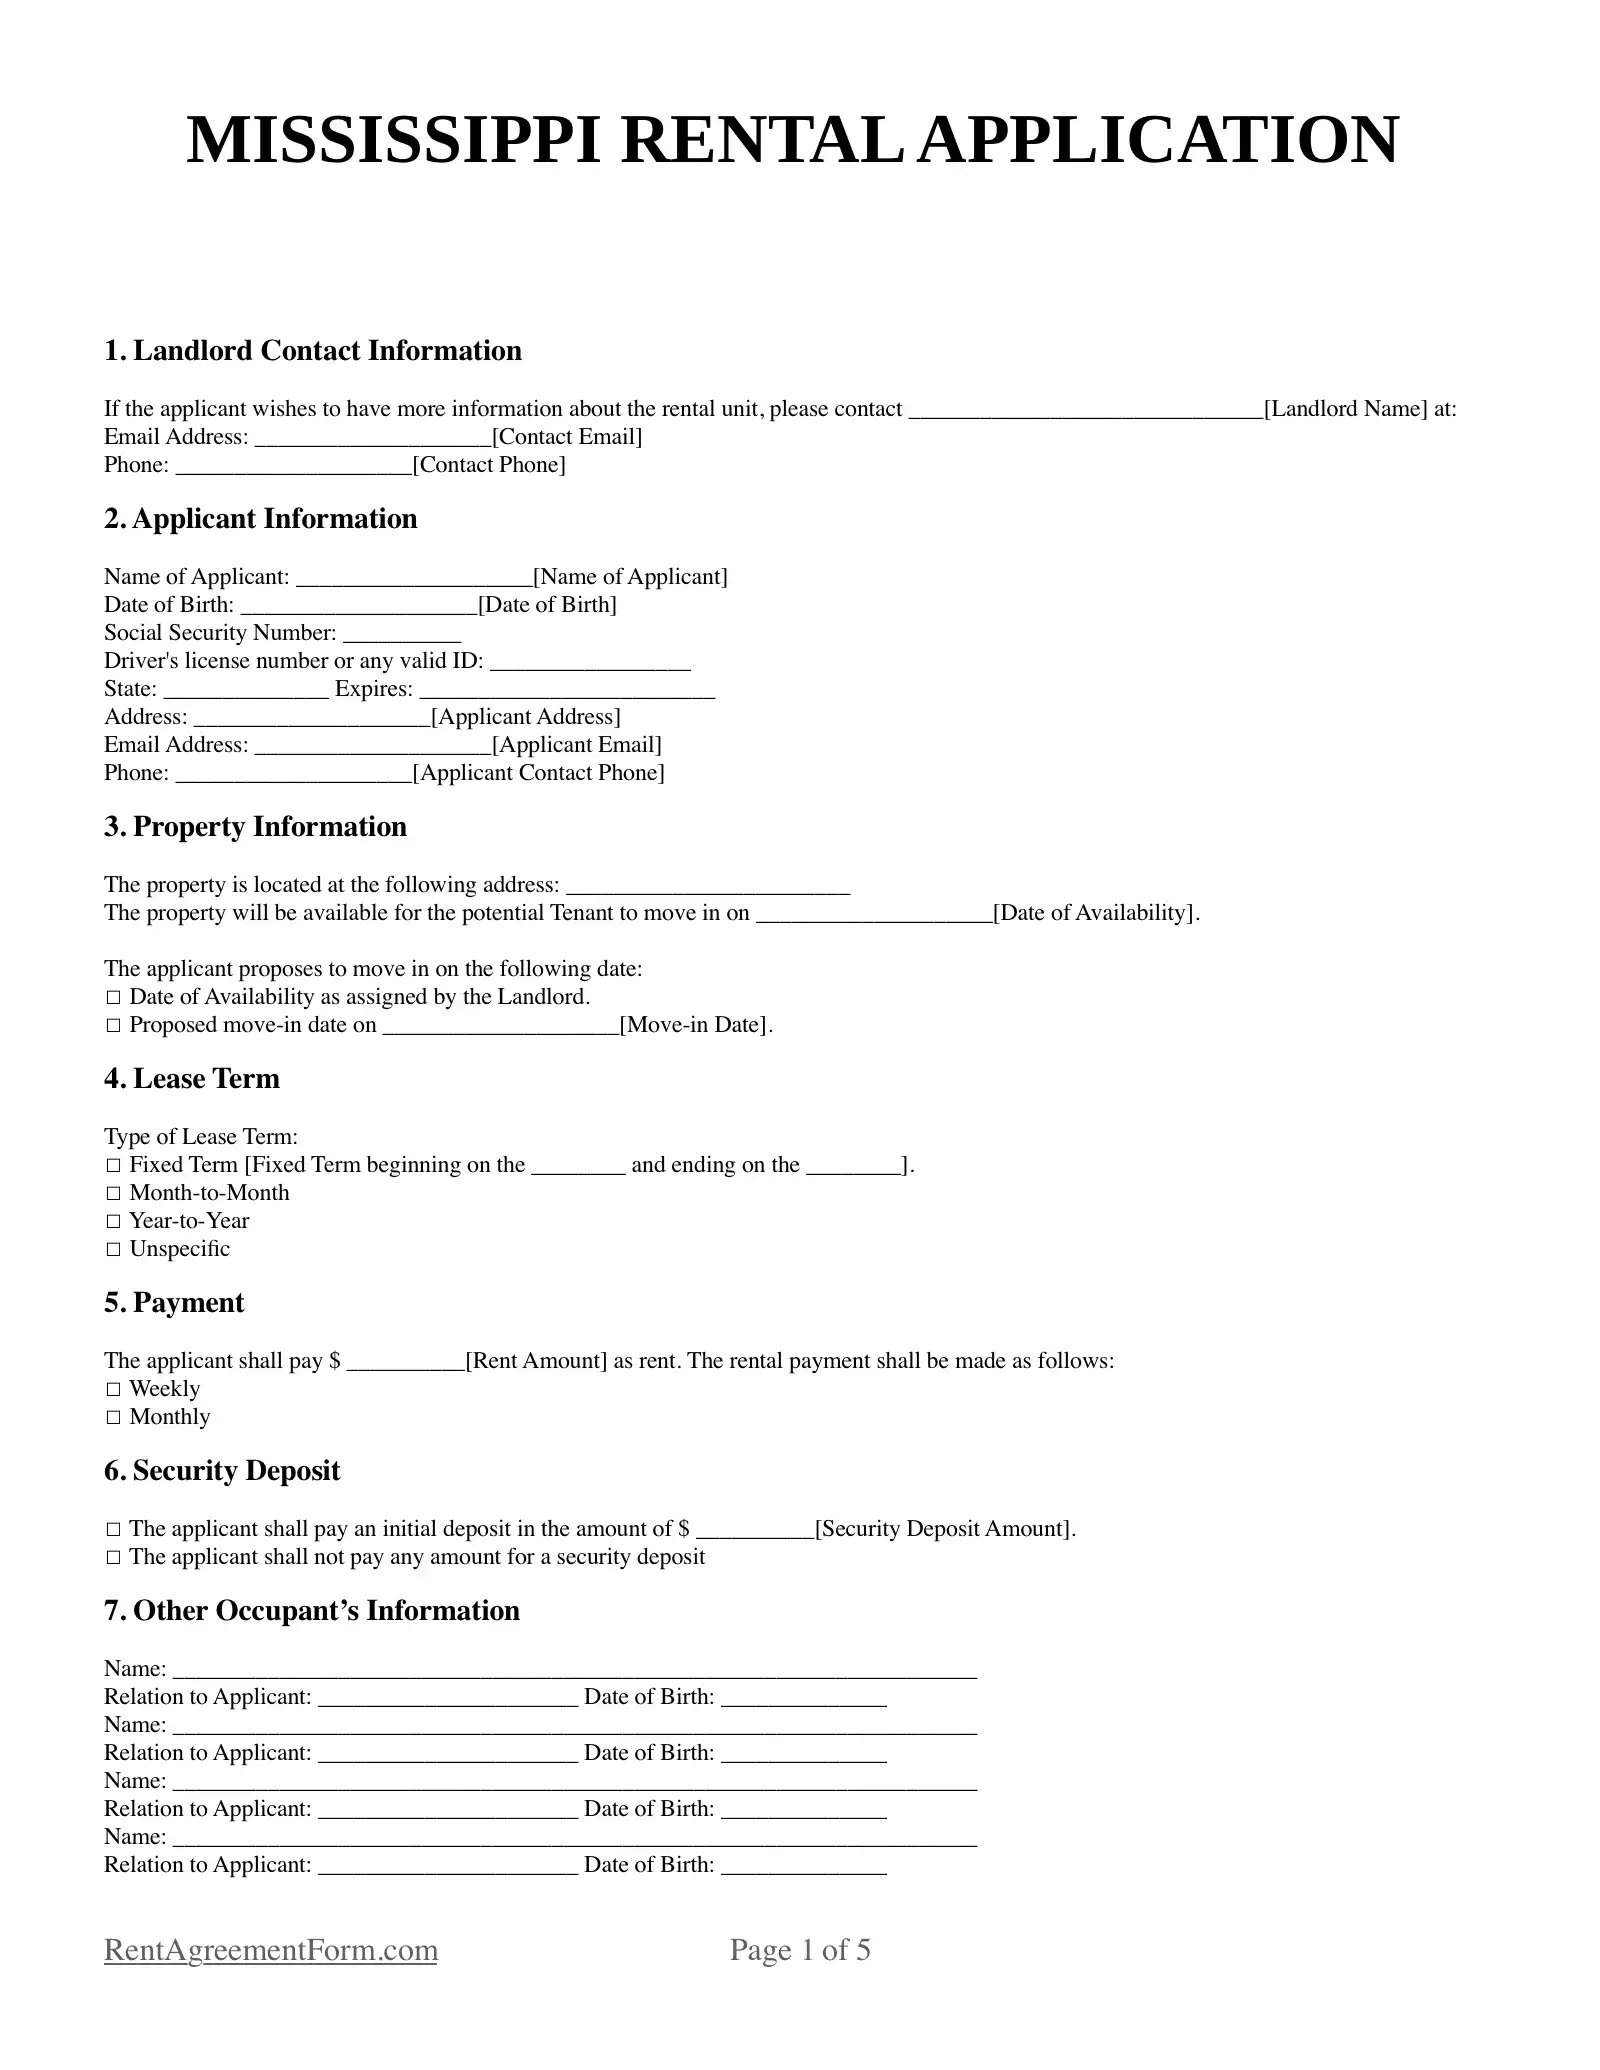 Mississippi Rental Application Sample